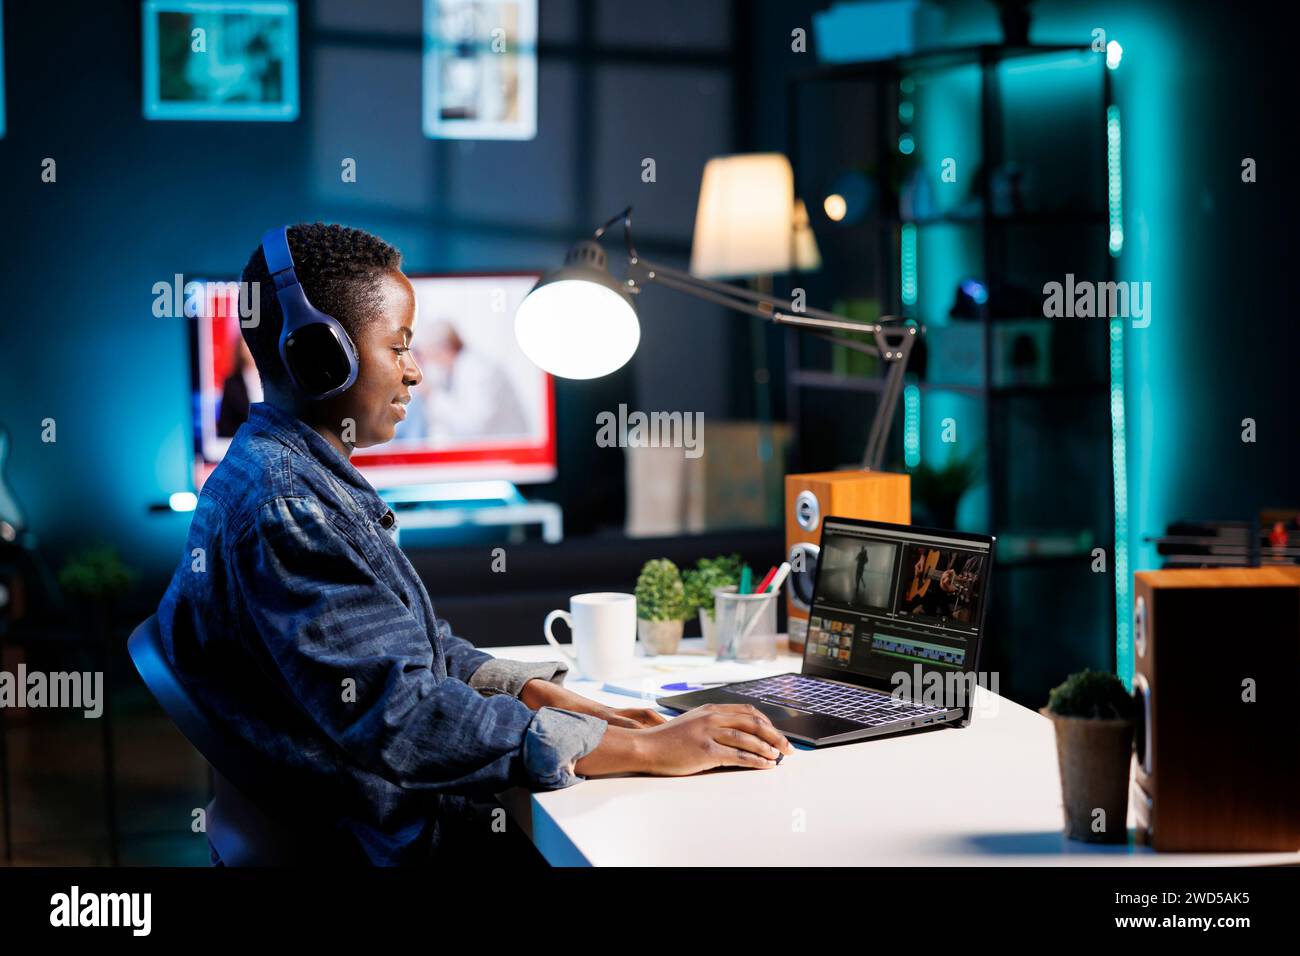 Schwarze Frau mit schnurlosem Headset zum Anhören und Bearbeiten von Audio- und Videoaufnahmen auf ihrem PC. Freelancer mit Kopfhörern und Laptop, der moderne Technologie bei der Erstellung von Inhalten nutzt. Stockfoto